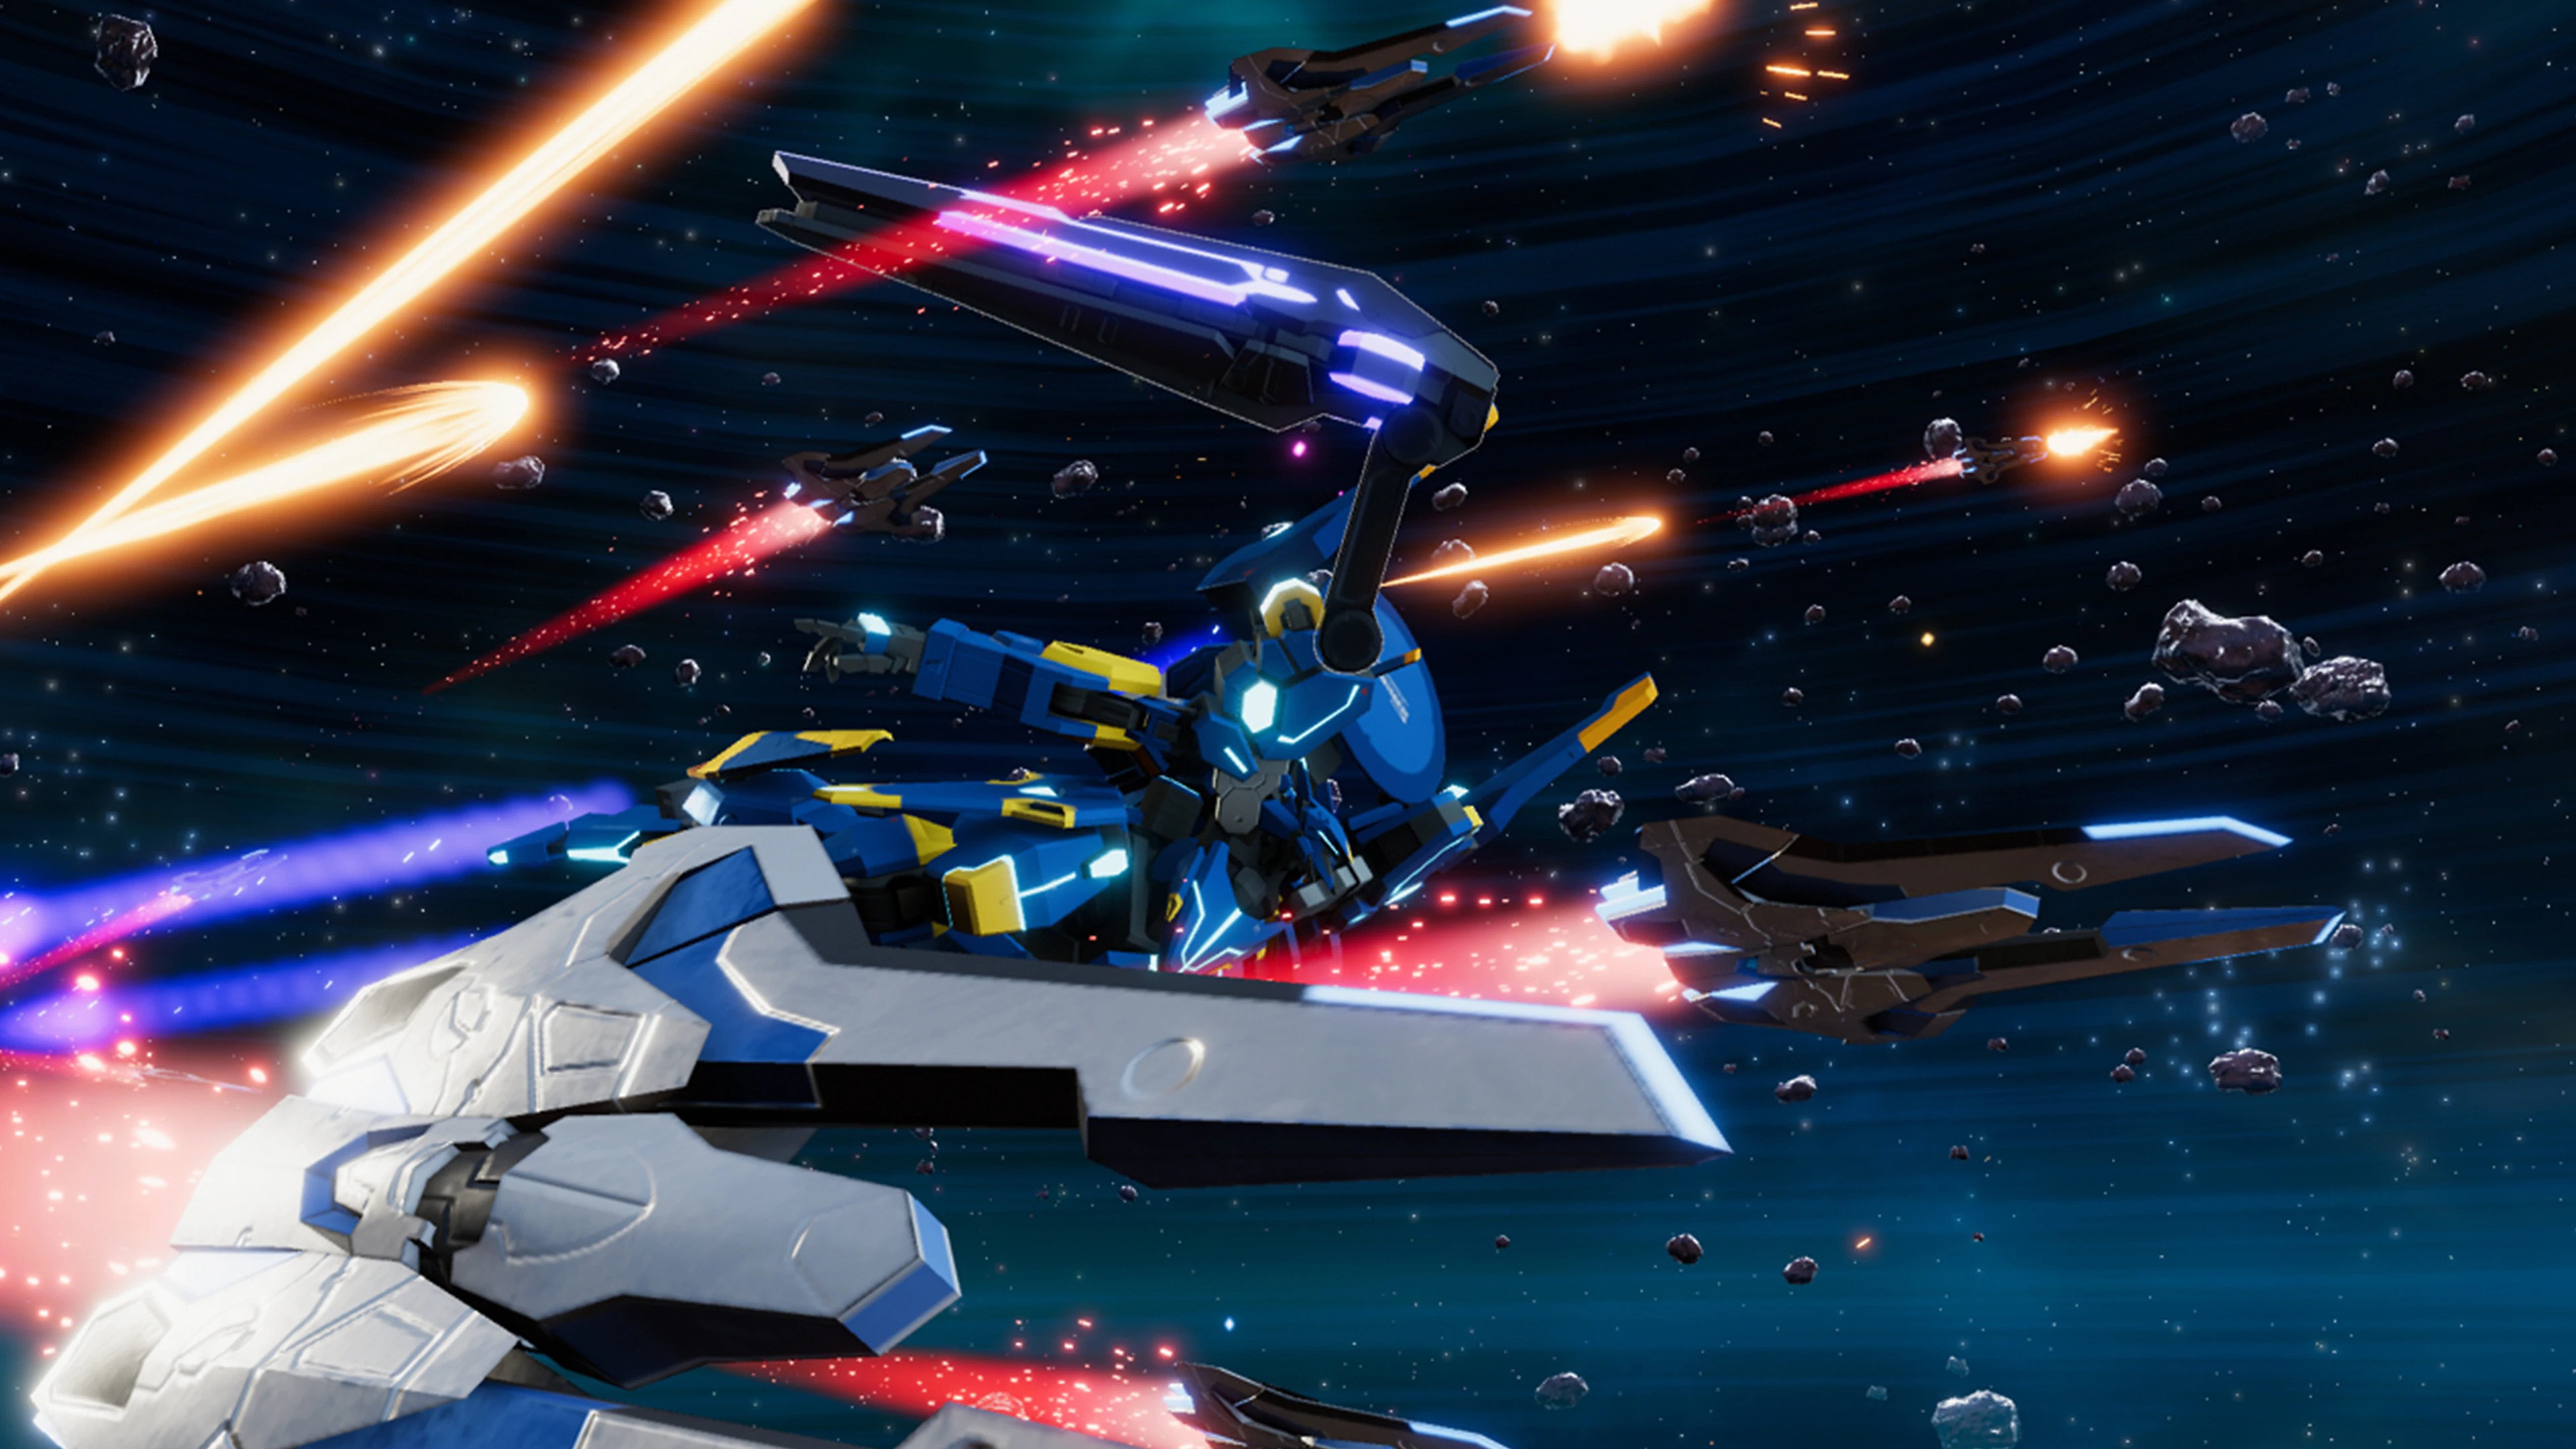 Captura de pantalla de Relayer que muestra un traje mecha volando a través del espacio junto a varias naves espaciales